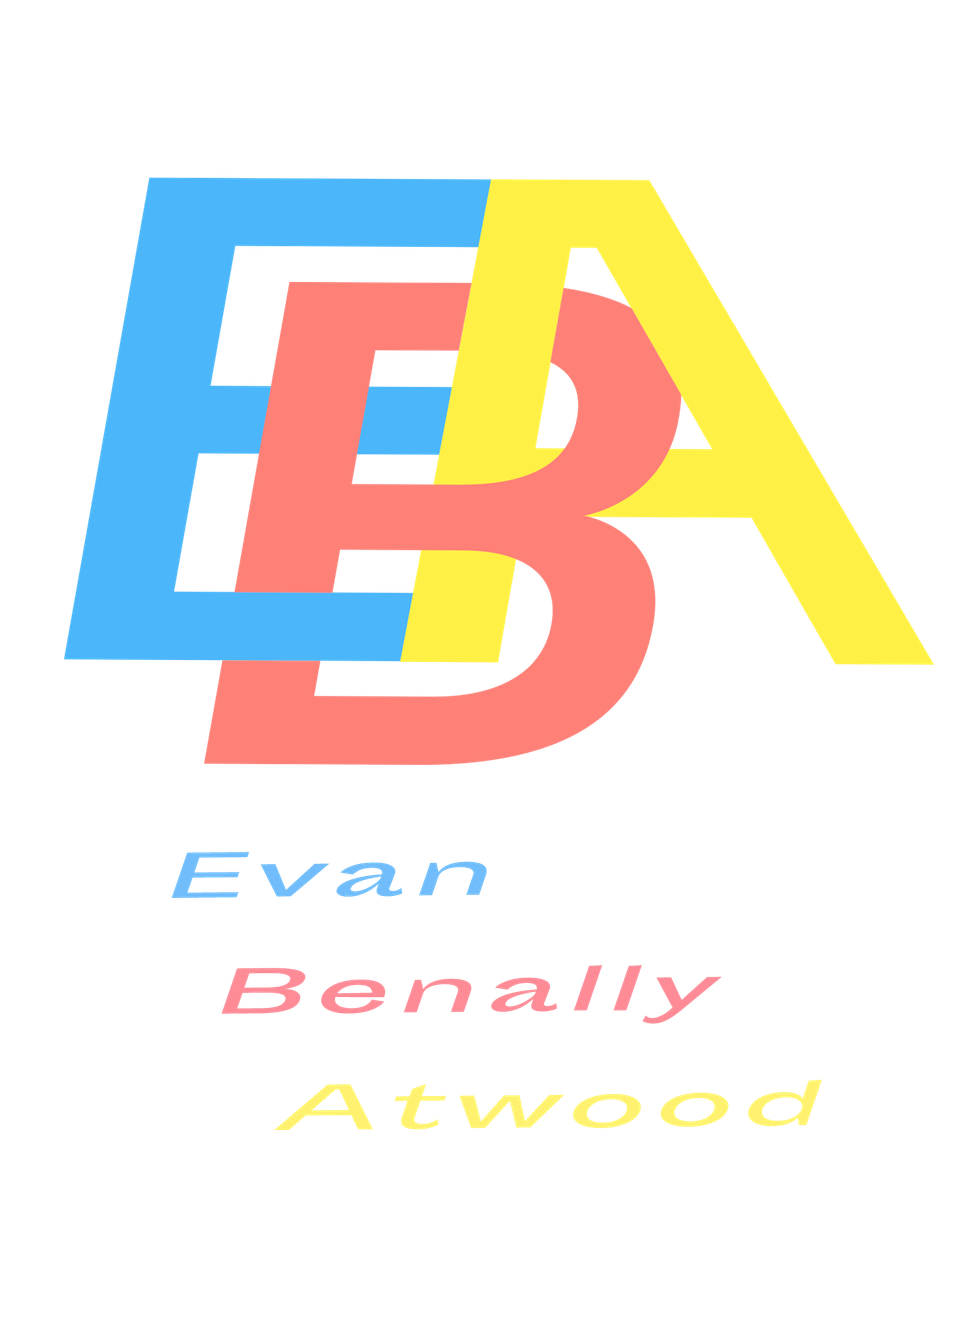 Evan Benally Atwood's Portfolio